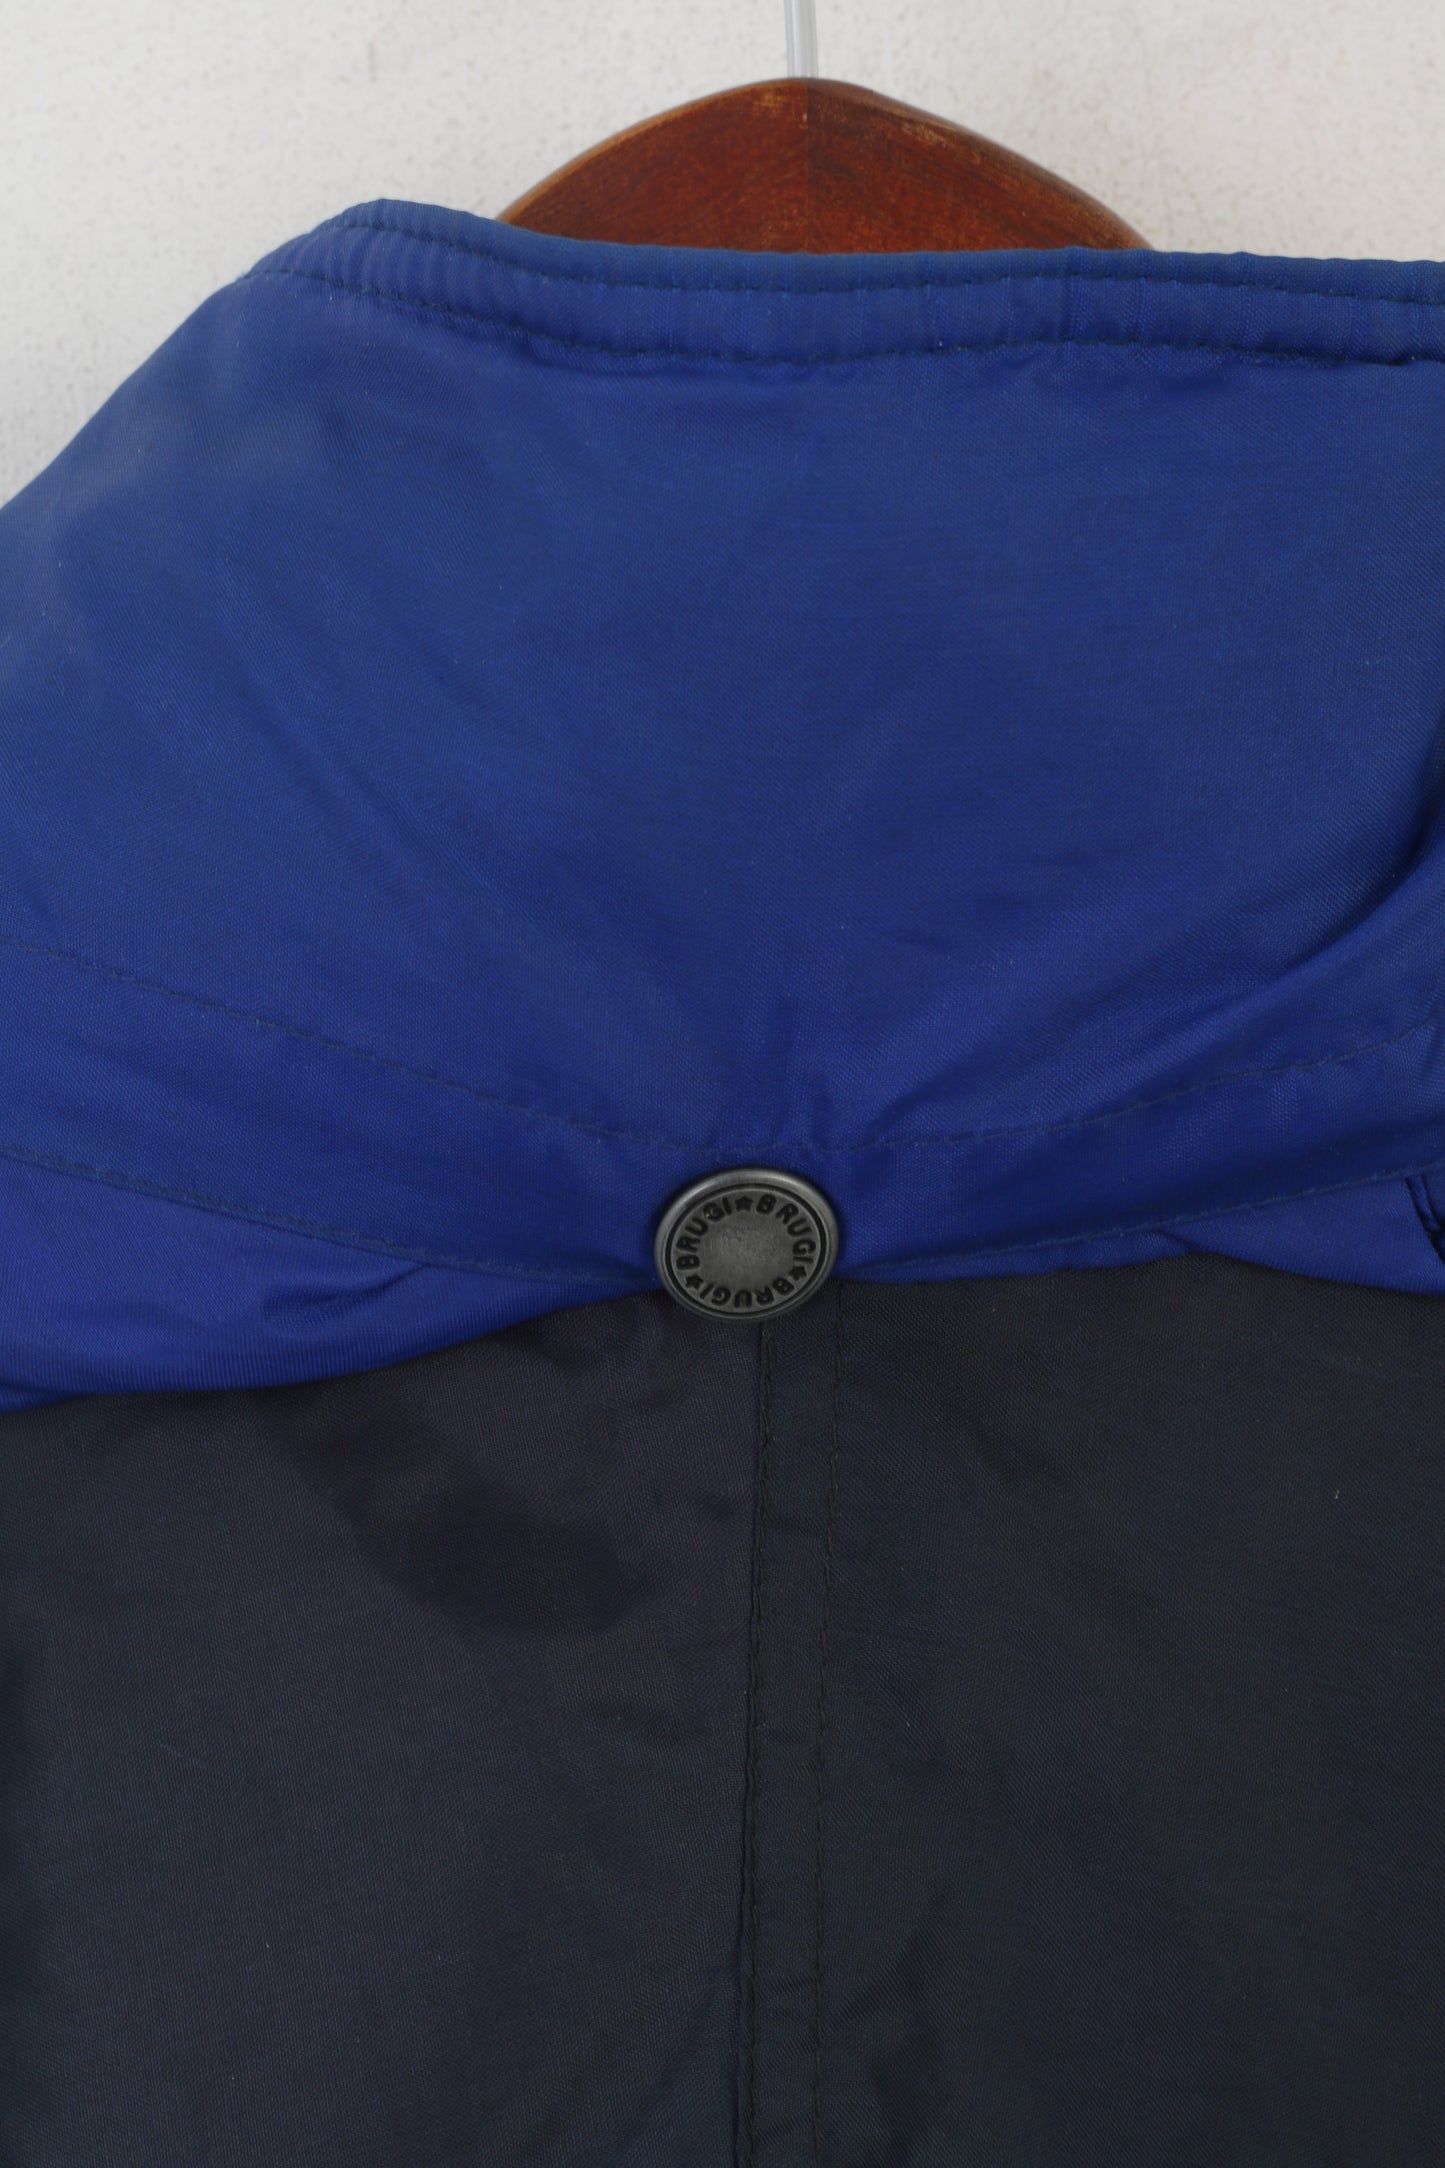 Giacca da uomo Brugi in nylon blu scuro vintage impermeabile in stile italiano con cappuccio nascosto